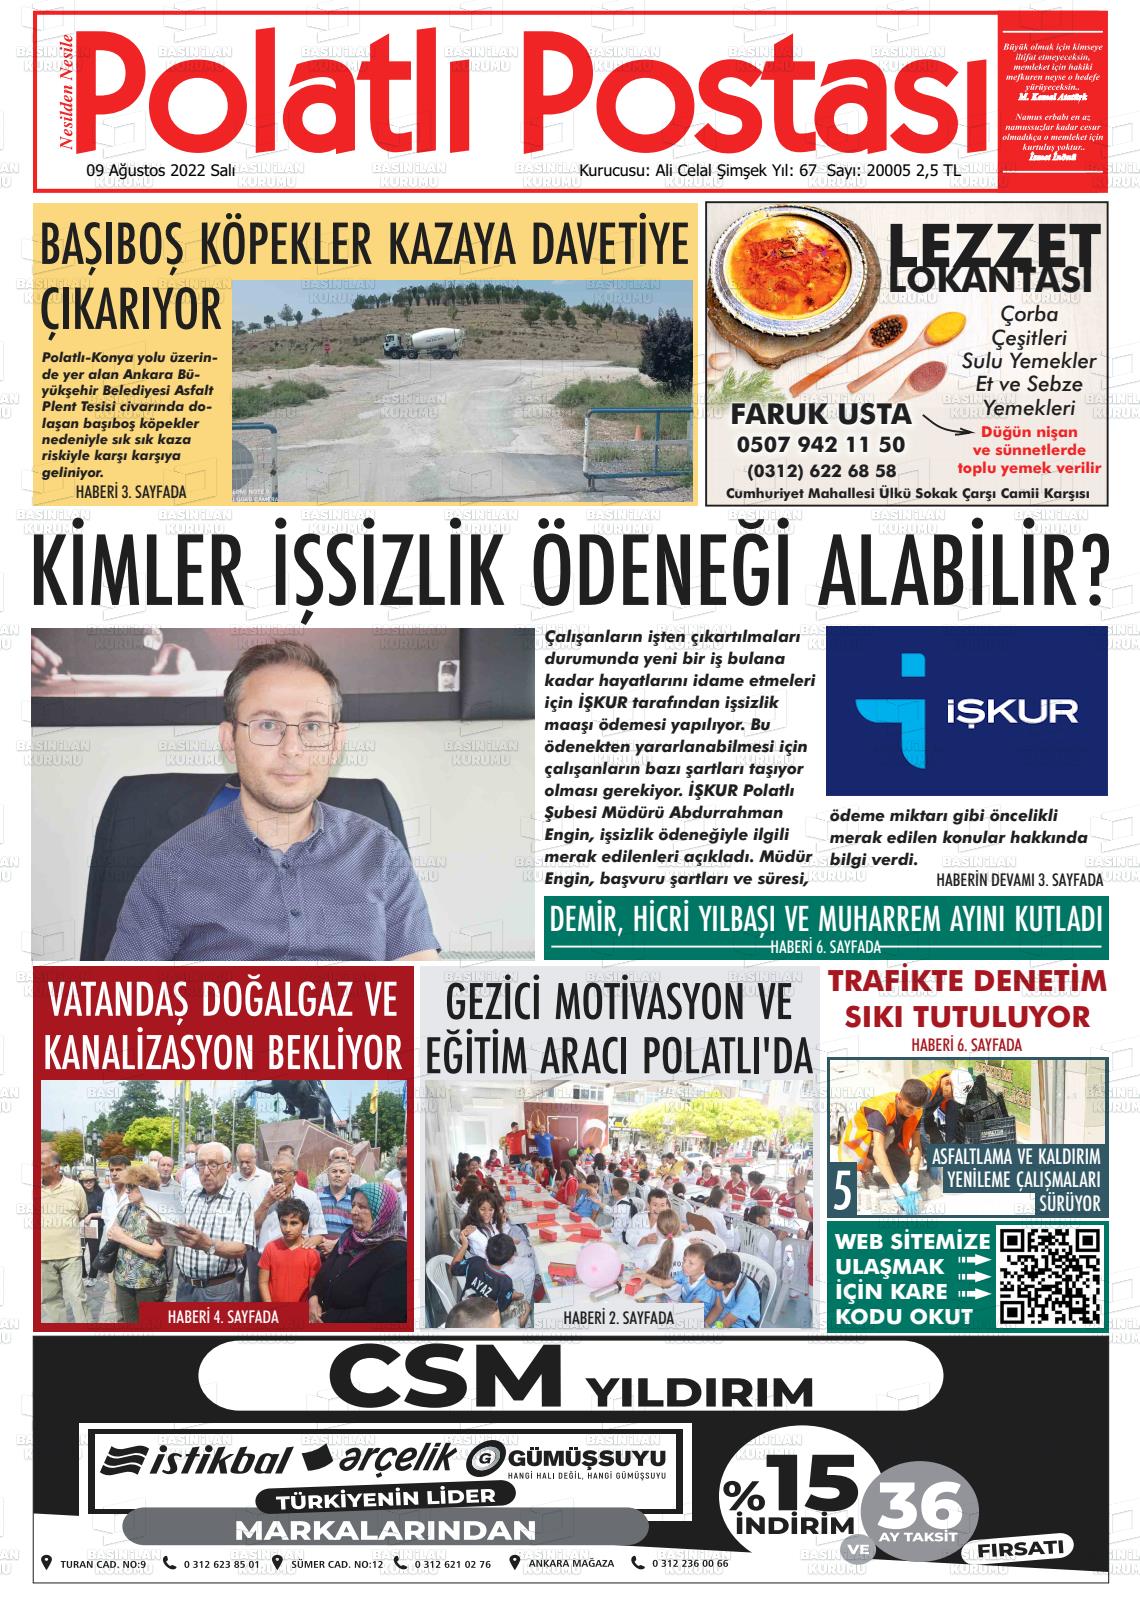 09 Ağustos 2022 Polatlı Postası Gazete Manşeti